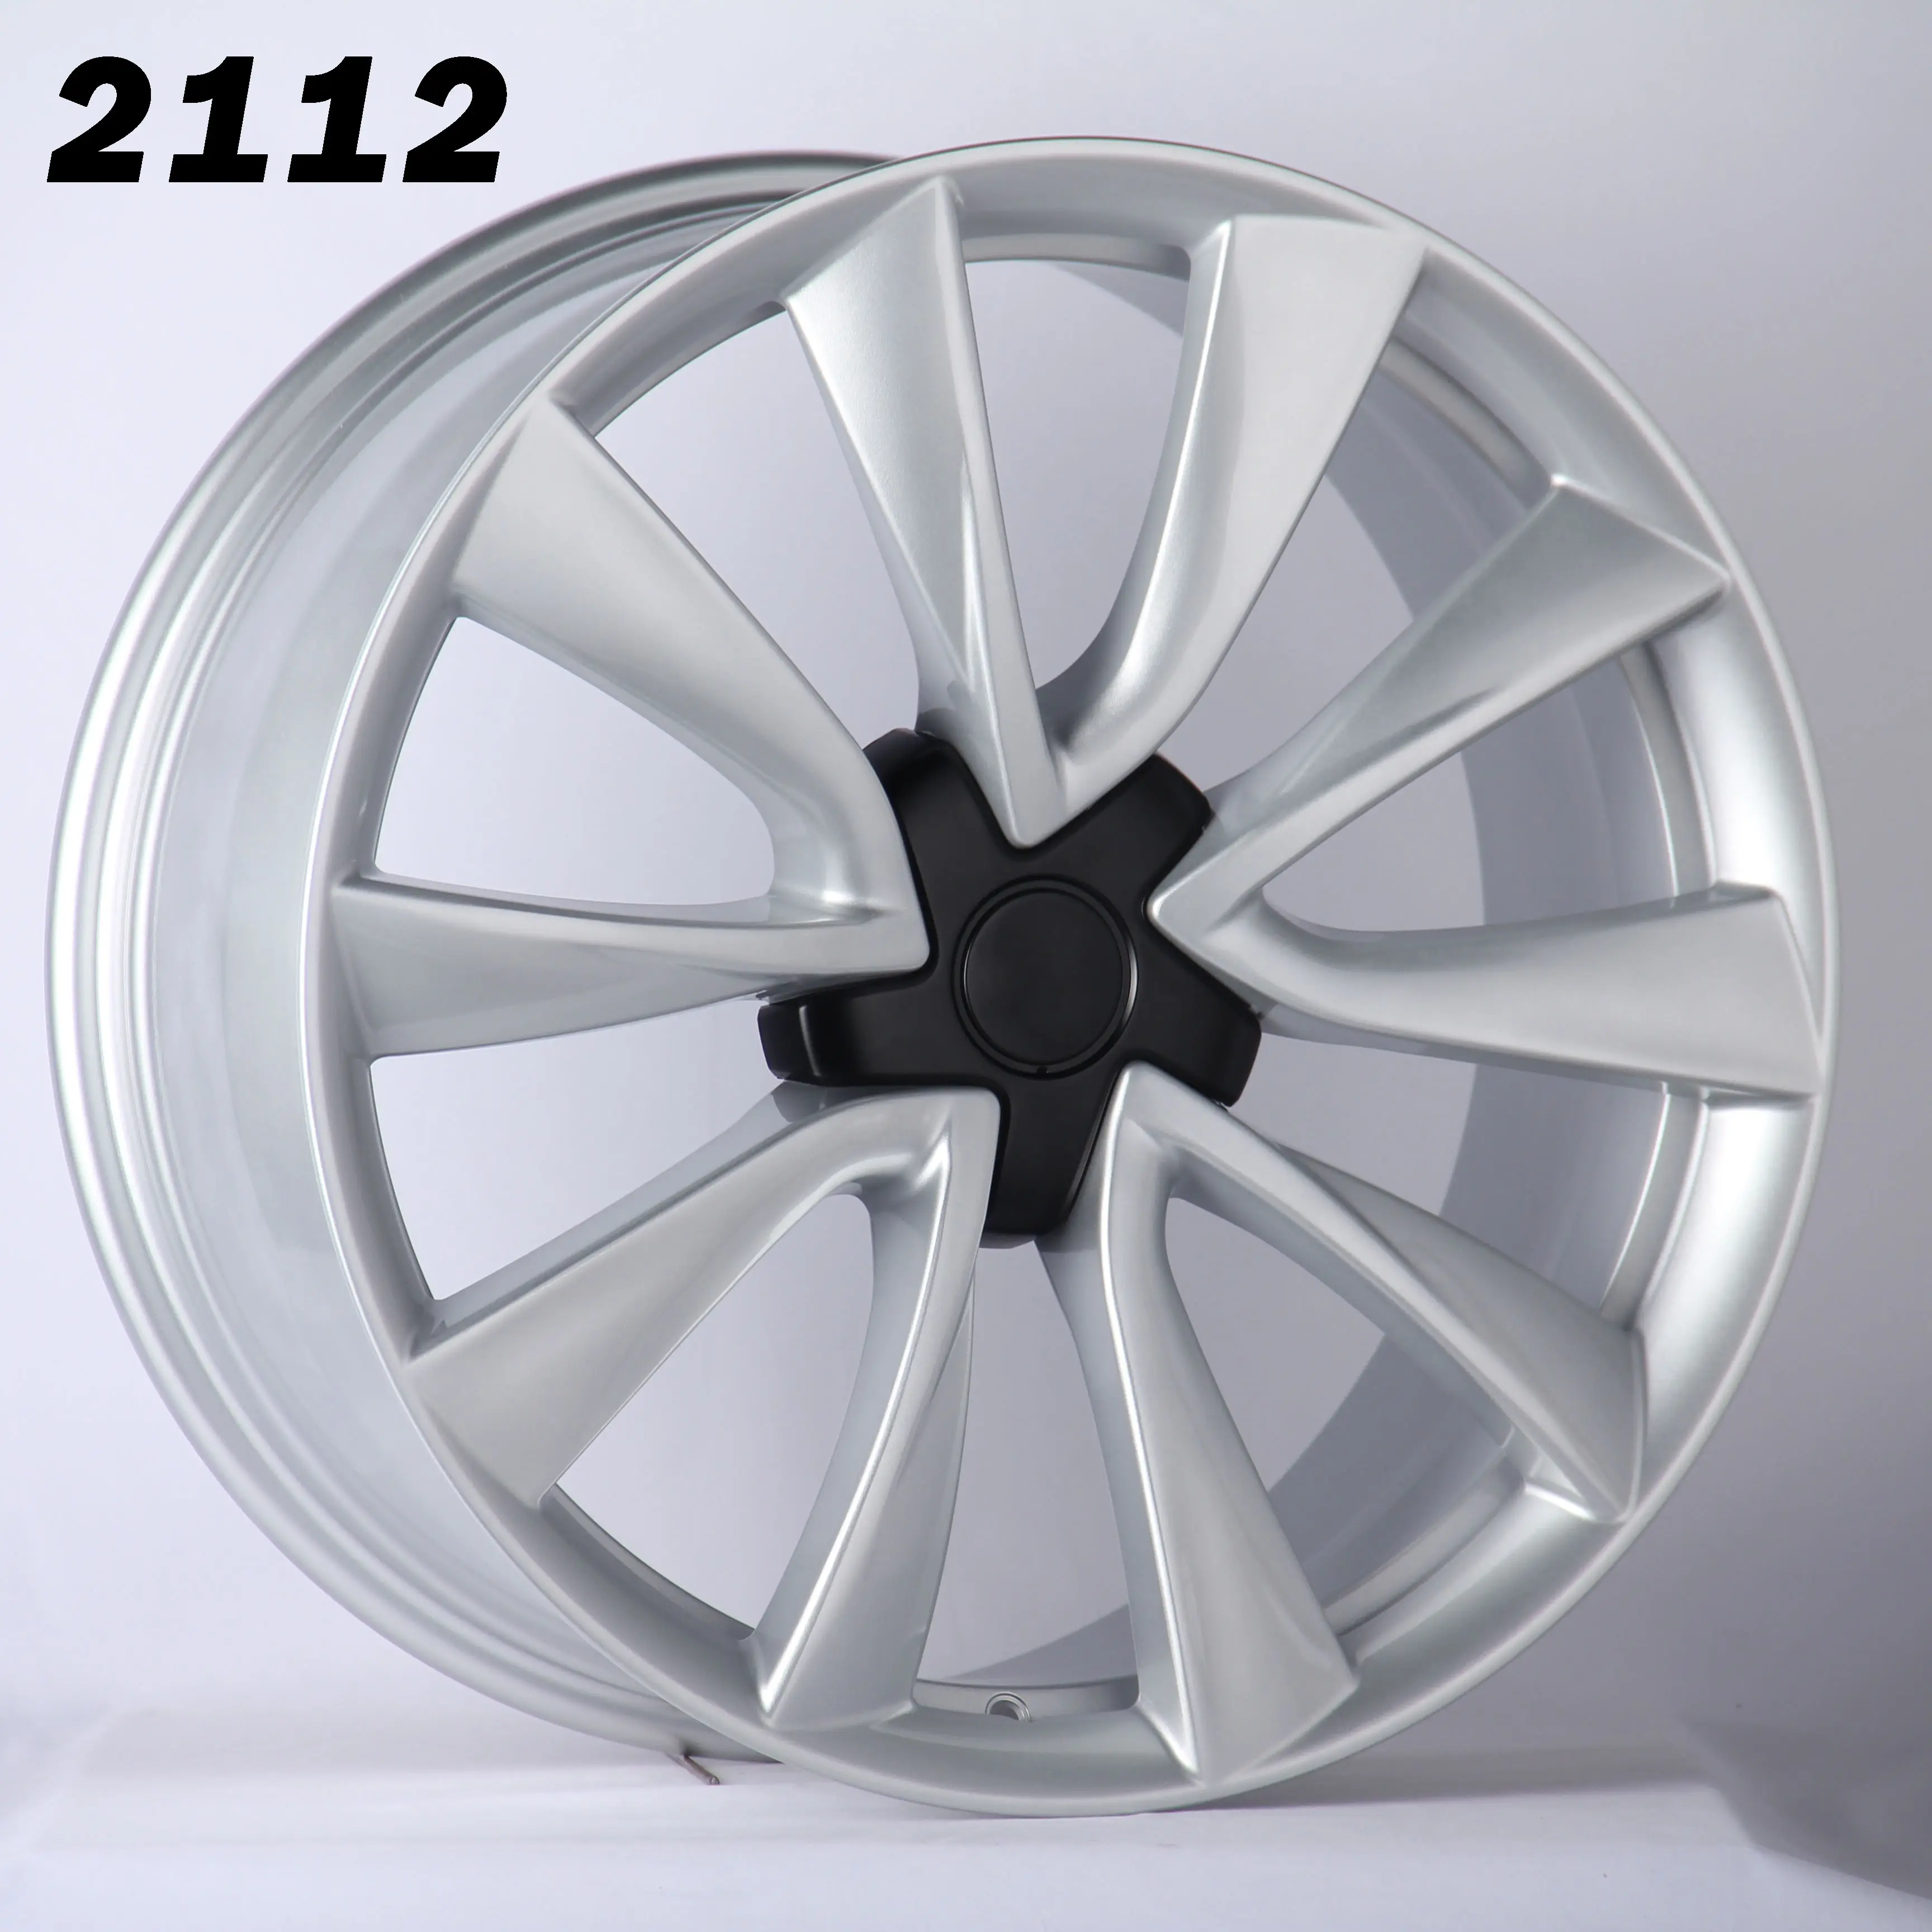 مندوب: 2112 19 بوصة عجلات الزهر لنموذج 3 عالية الجودة عجلات مصنوعة من خليط معدني في الأوراق المالية